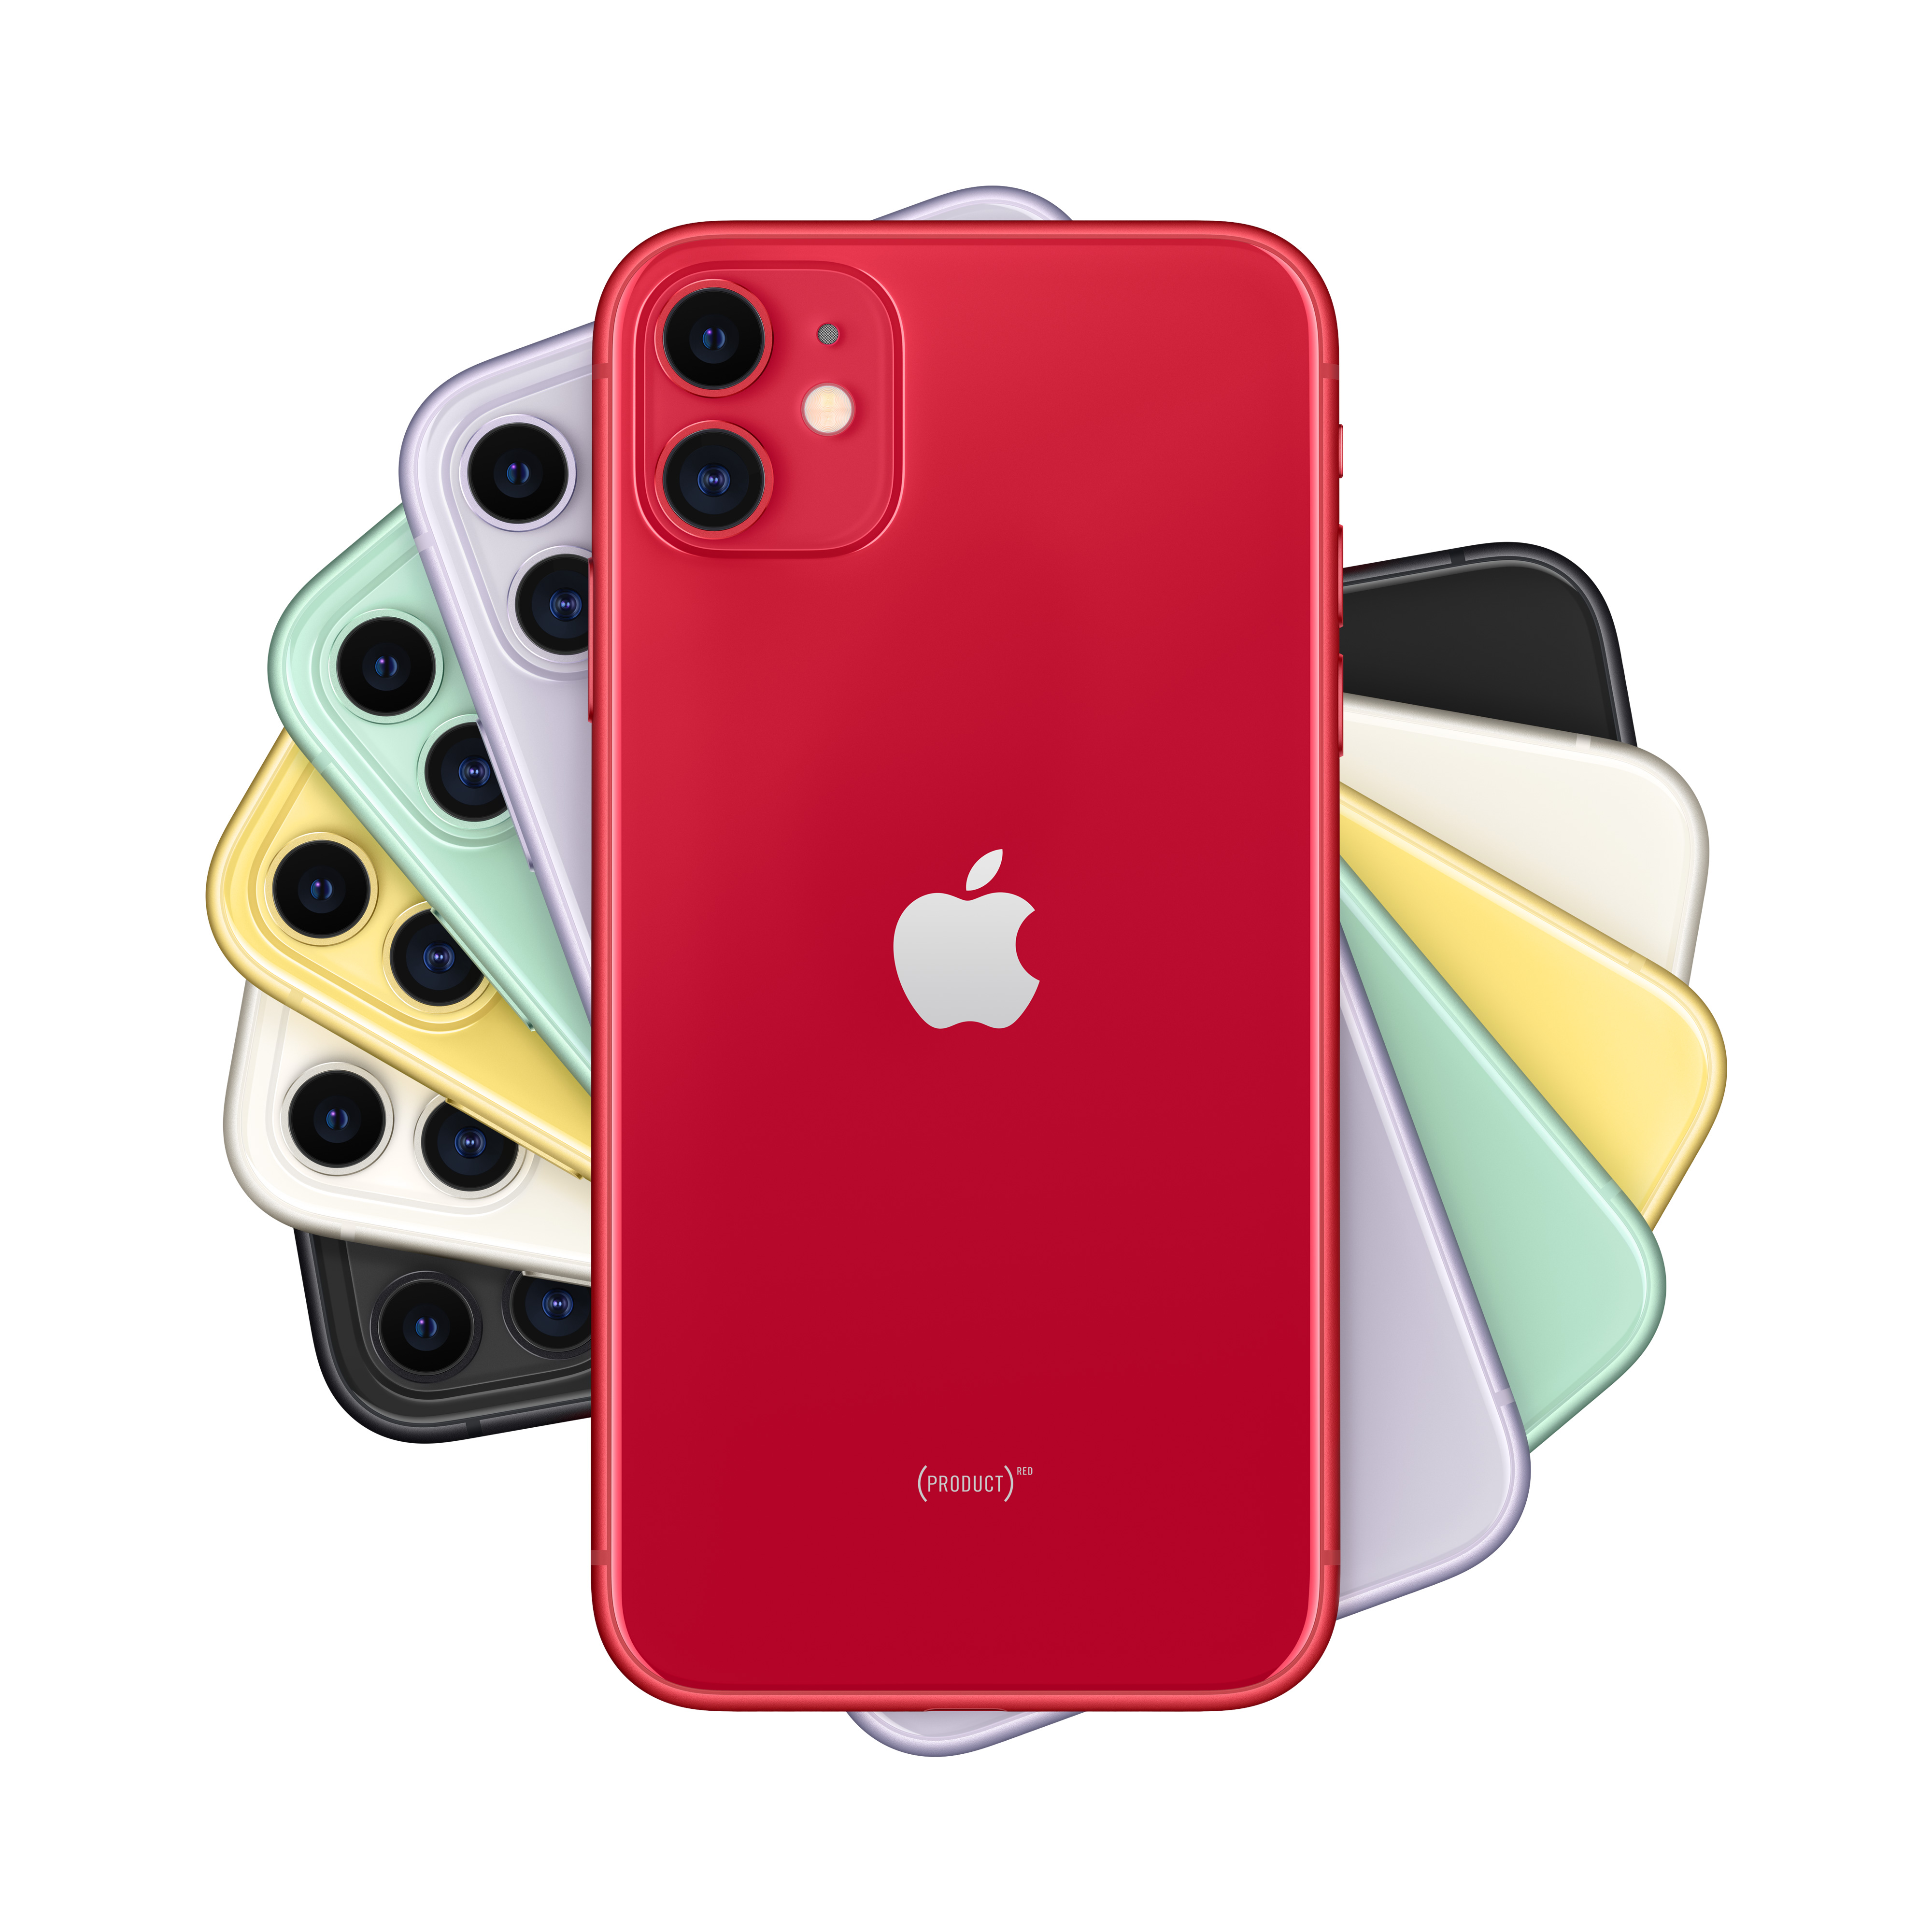 Фото — Apple iPhone 11, 256 ГБ, (PRODUCT)RED, новая комплектация